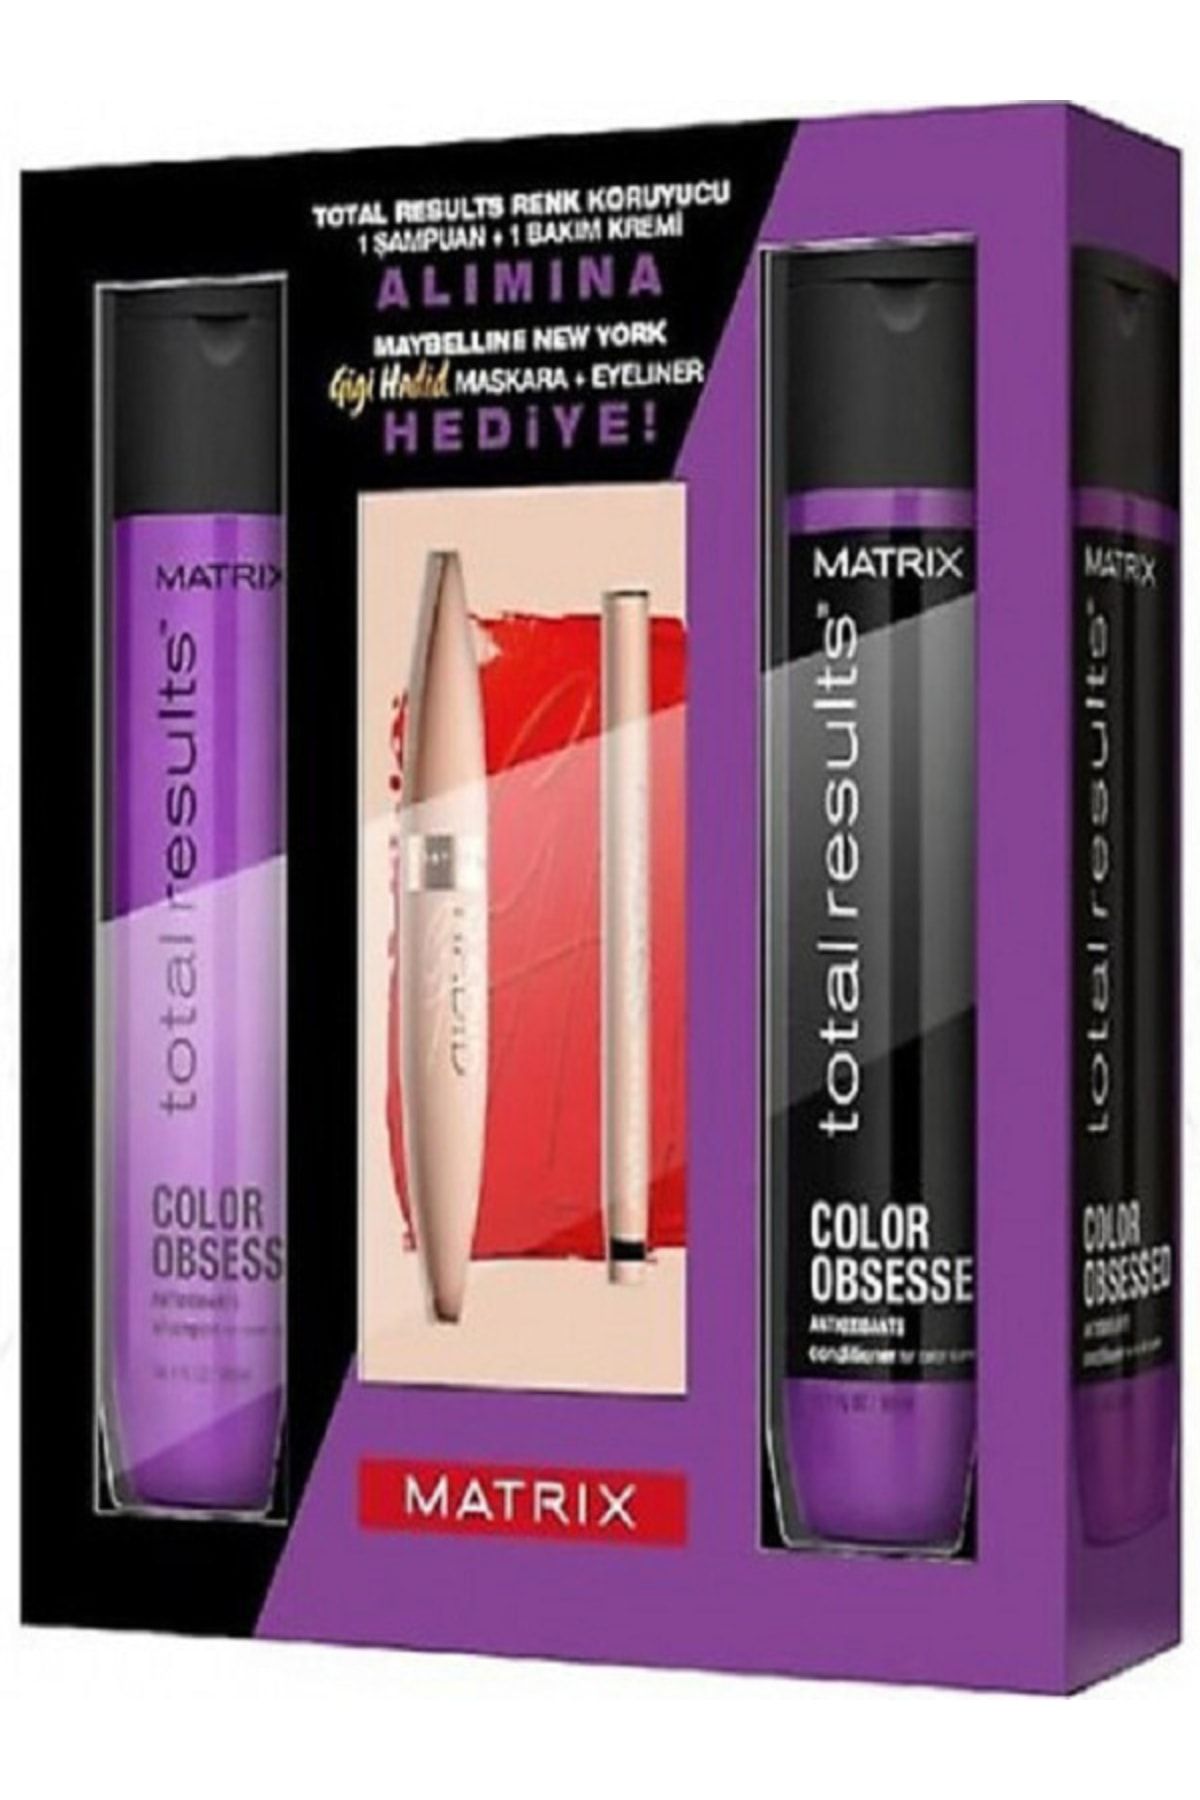 Matrix Boyalı Ve Röfleli Saçlarda Renk Koruma 1 Şampuan+ 1 Krem (maybelline Maskara + Eyeliner Hediye)